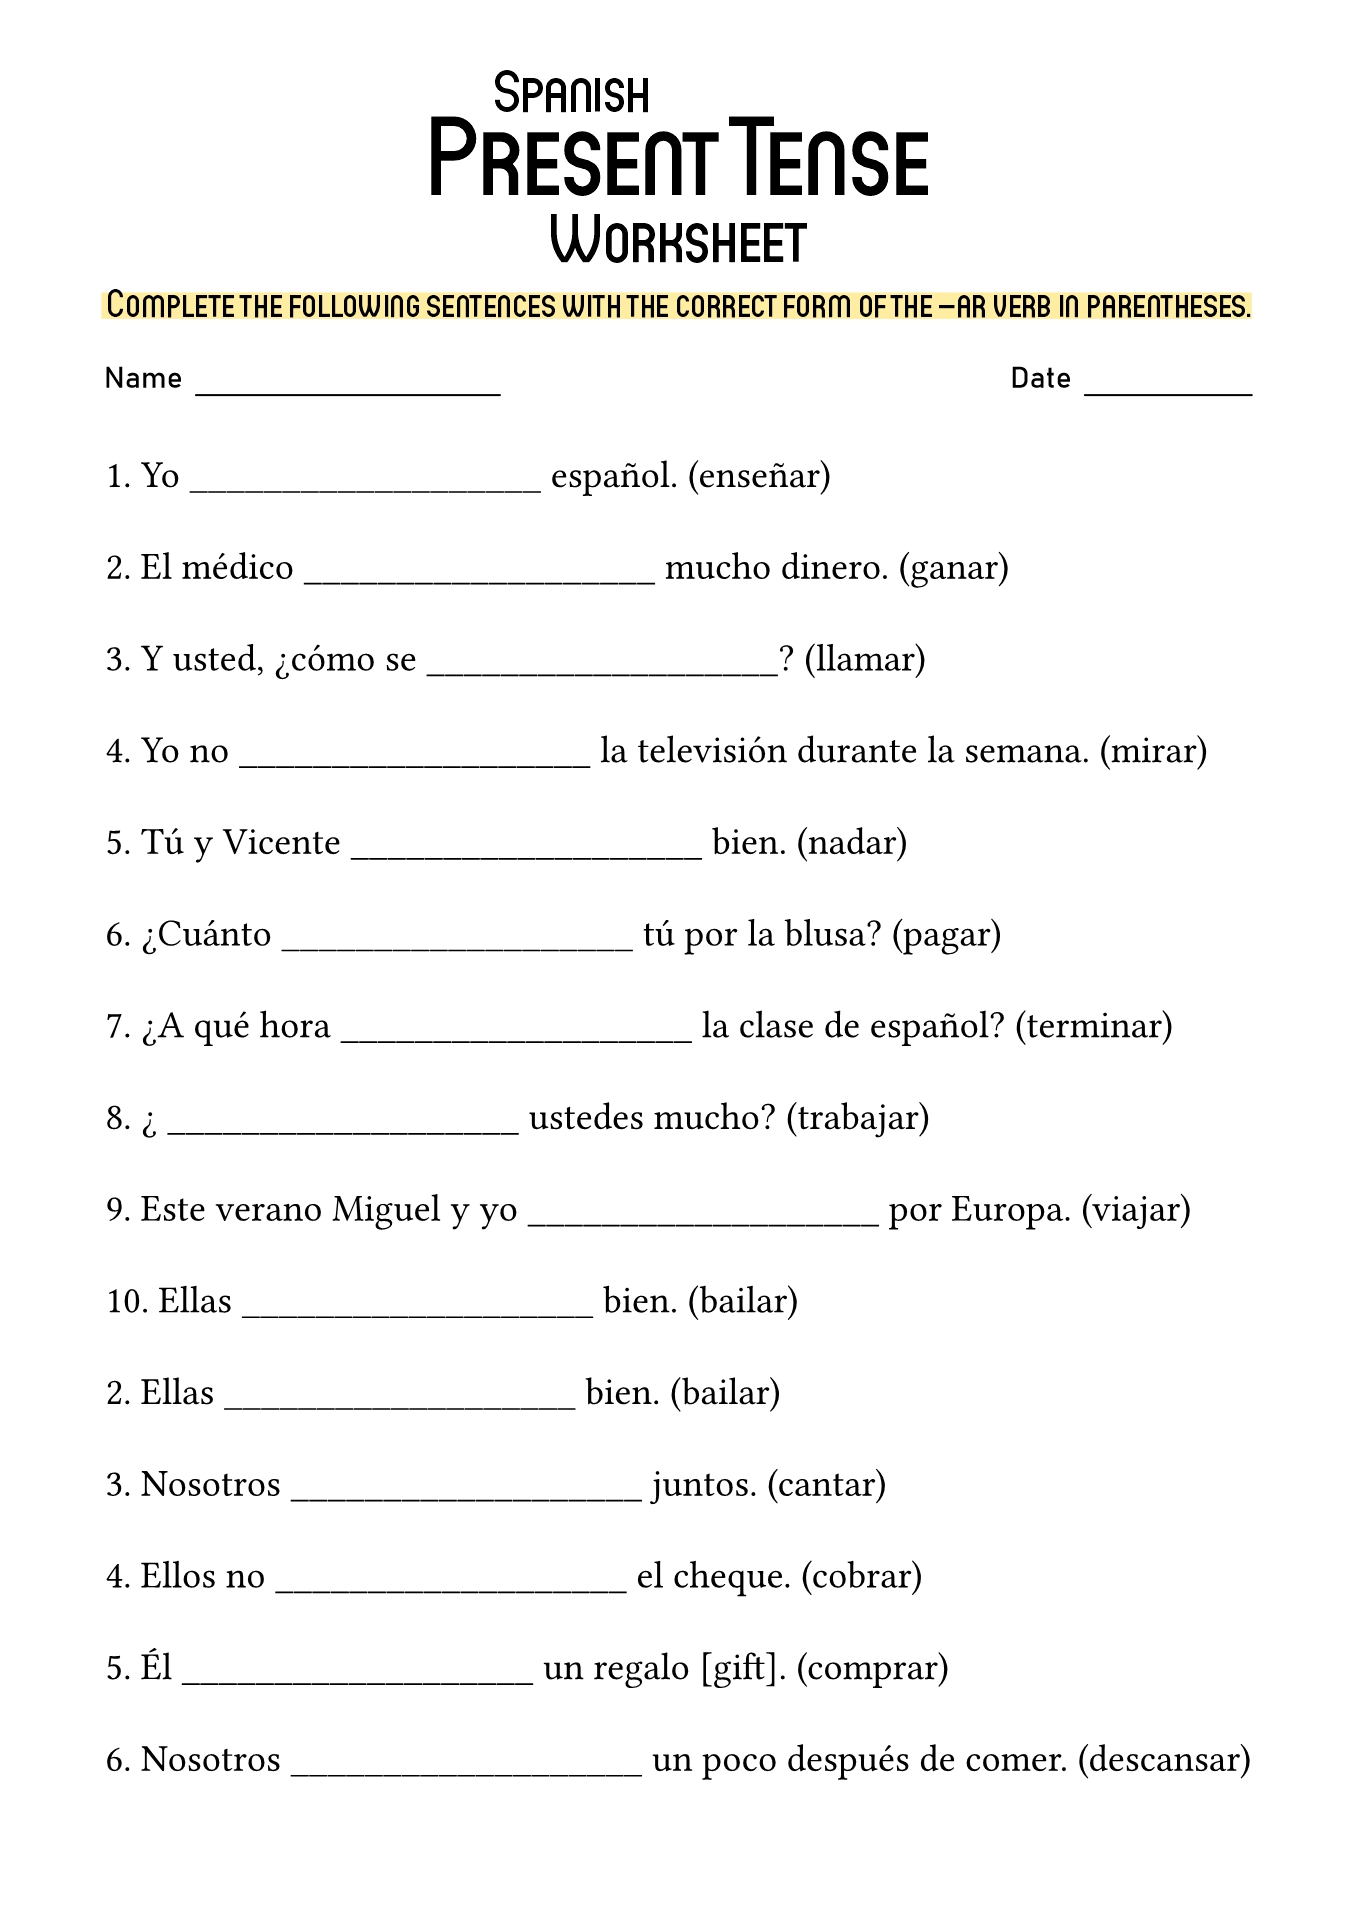 Spanish AR Verb Conjugation Worksheet